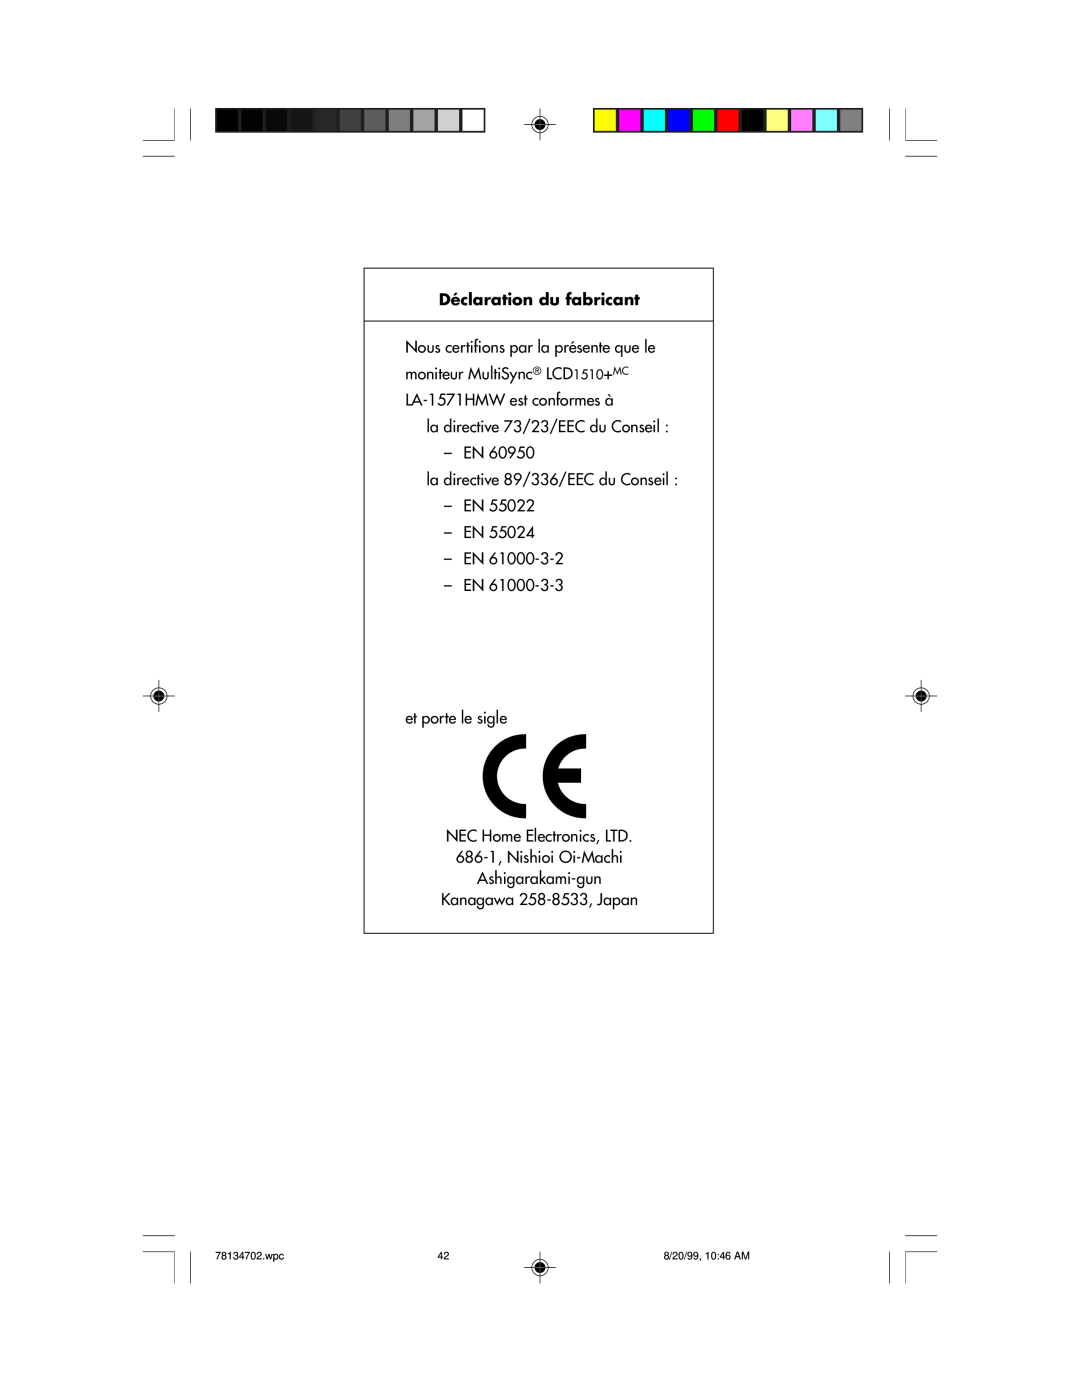 NEC Déclaration du fabricant, Nous certifions par la présente que le, moniteur MultiSync LCD1510+MC, 78134702.wpc 